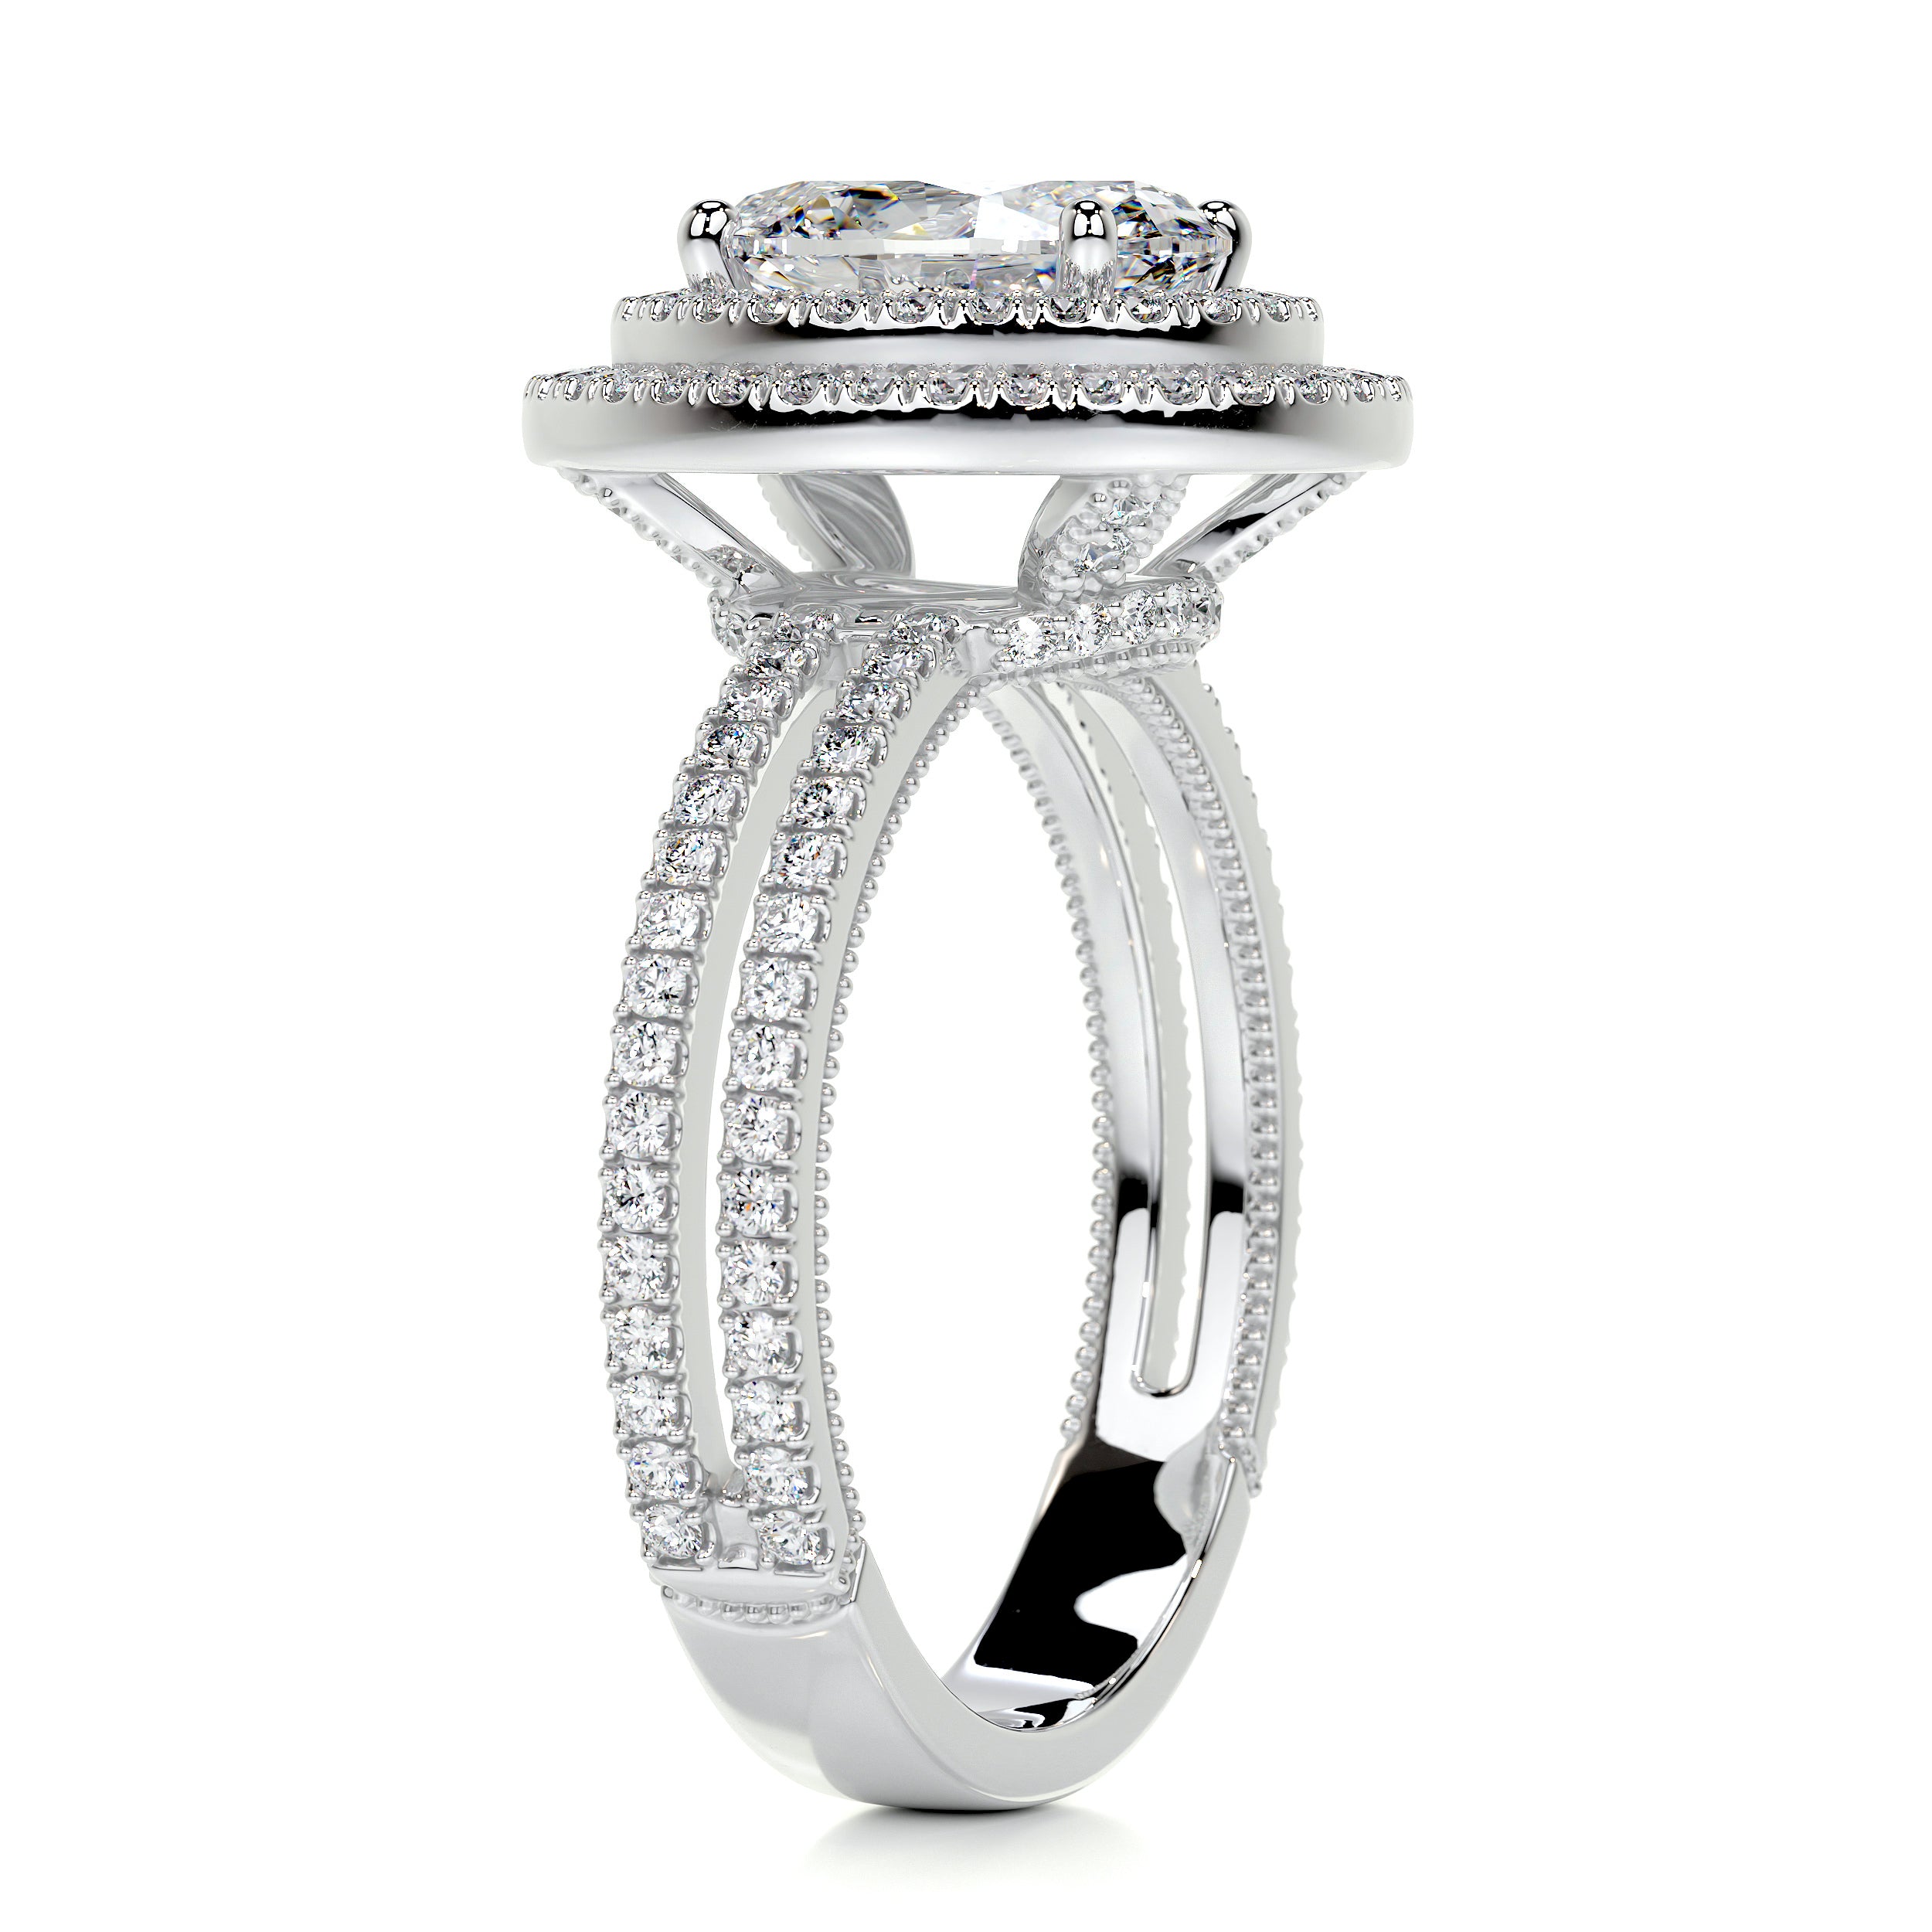 Willa Diamond Engagement Ring   (3 Carat) -14K White Gold